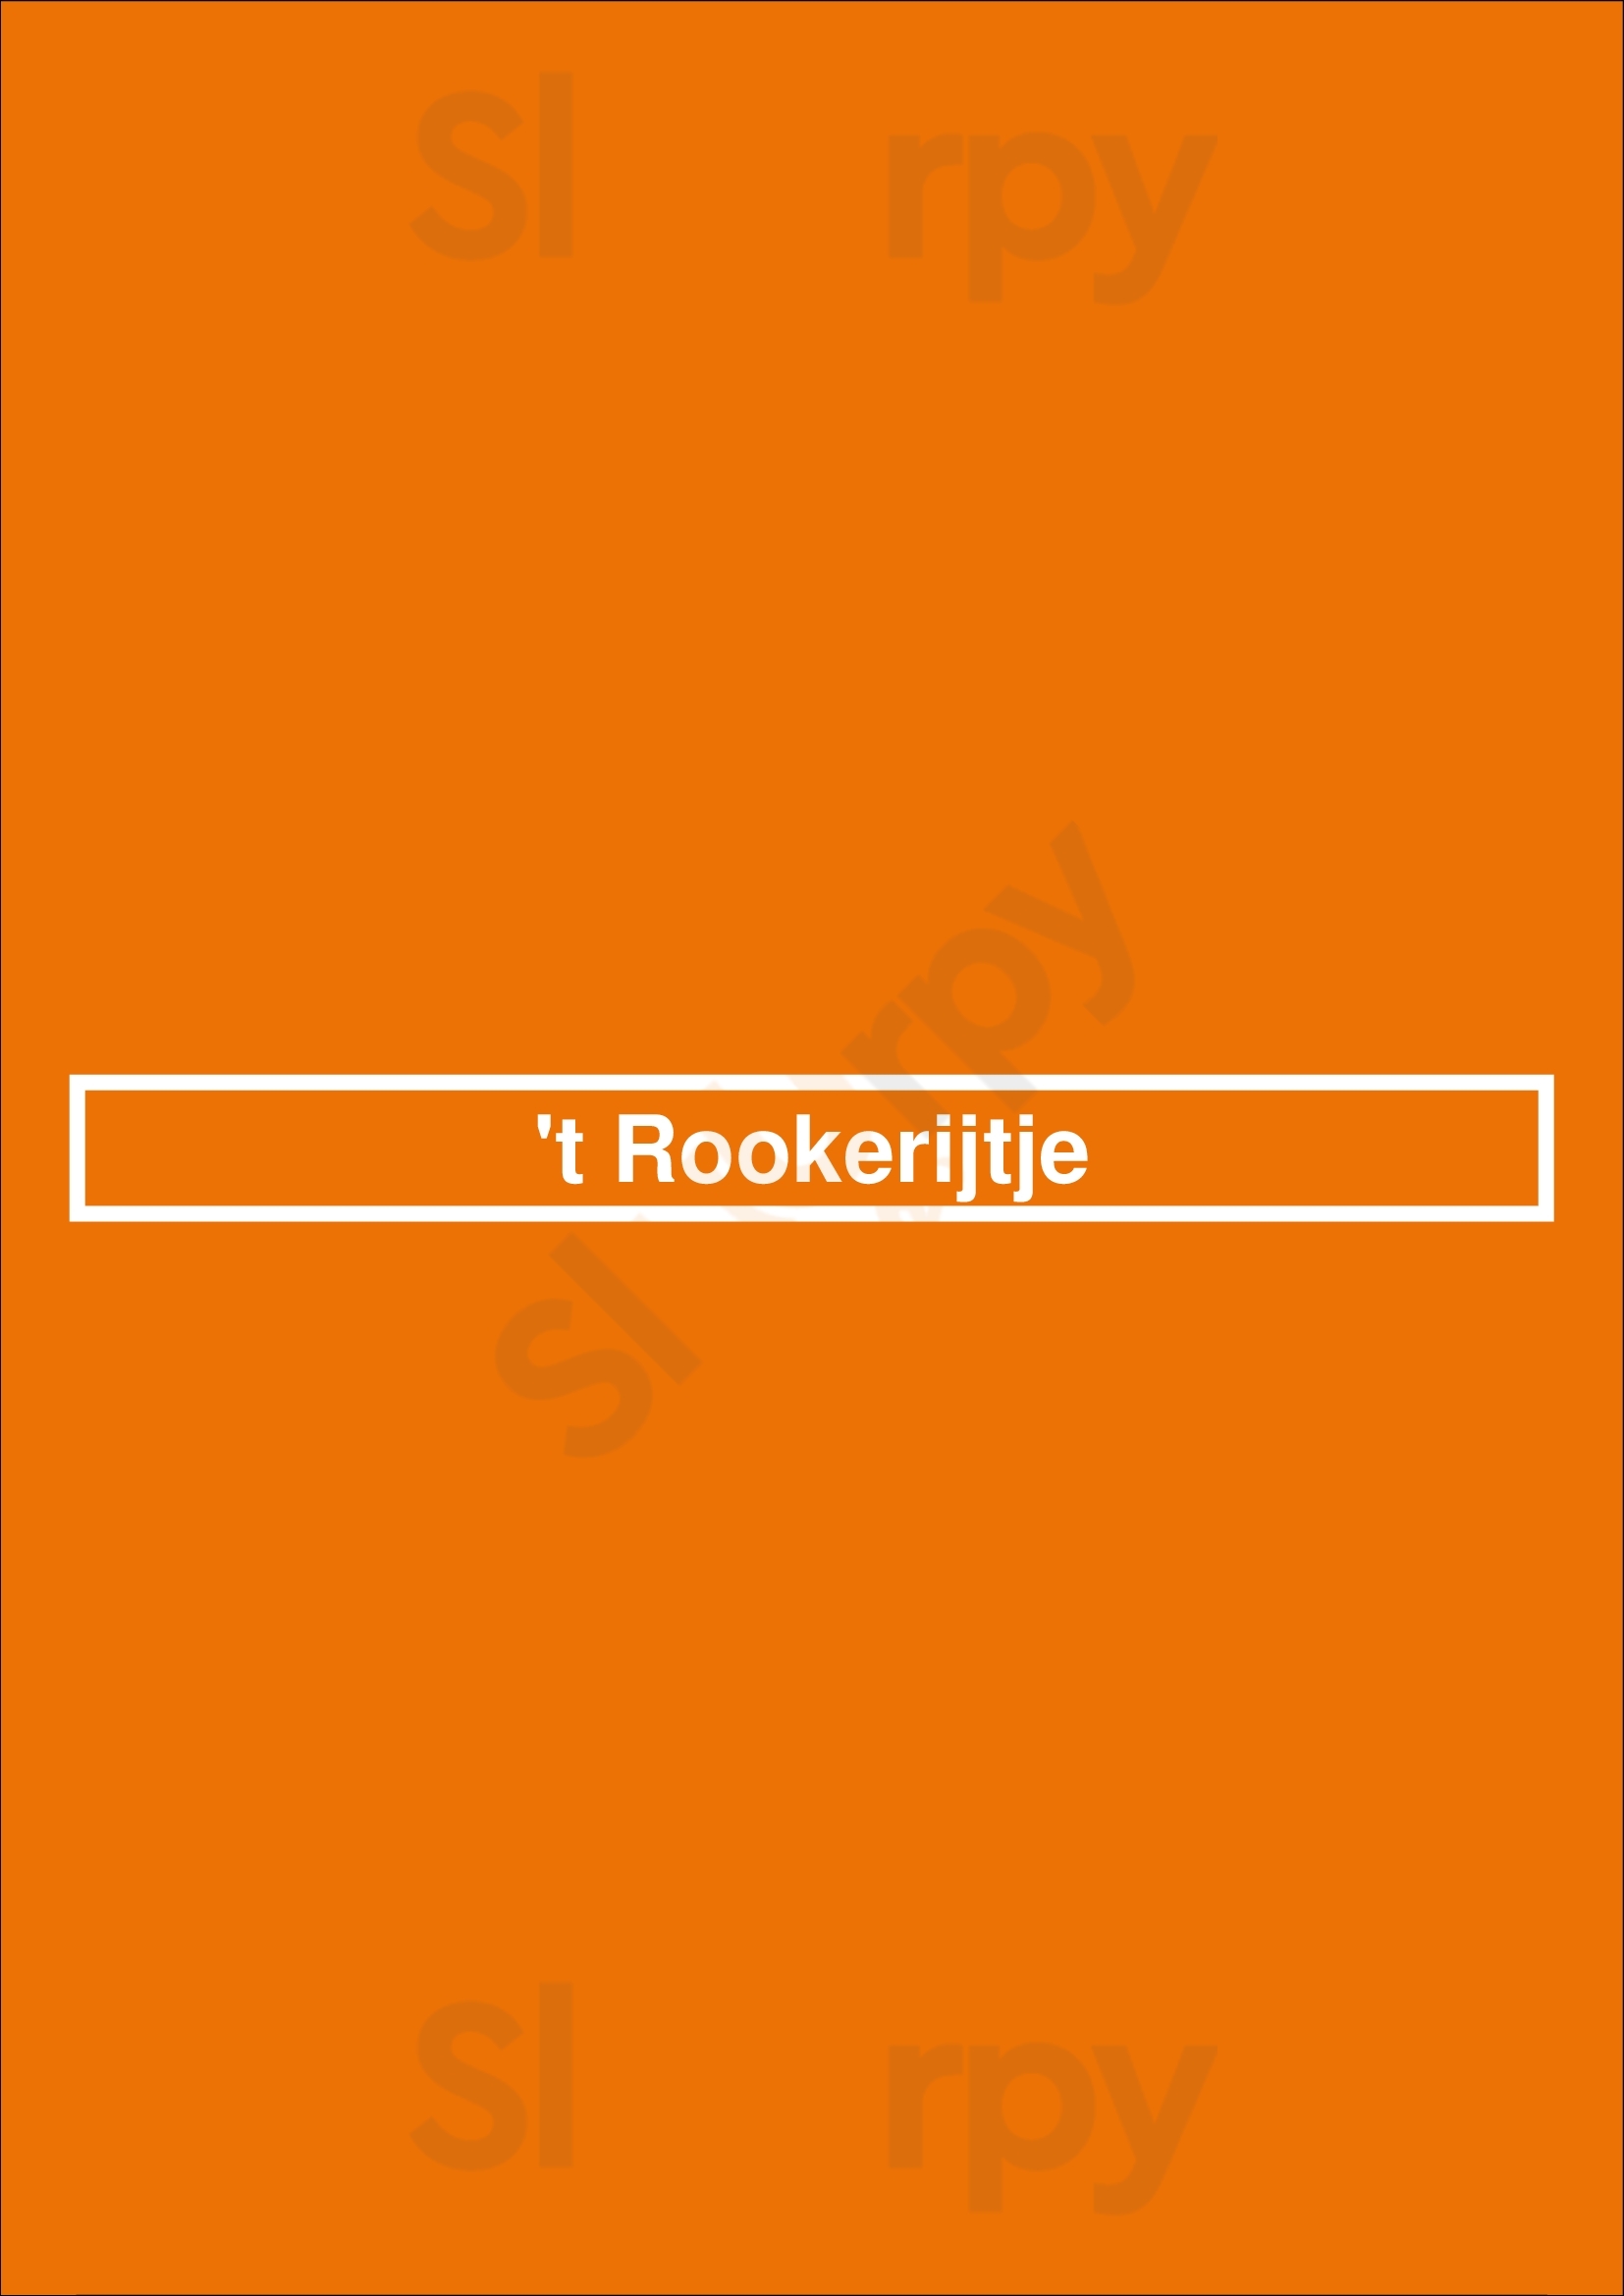 't Rookerijtje Harderwijk Menu - 1